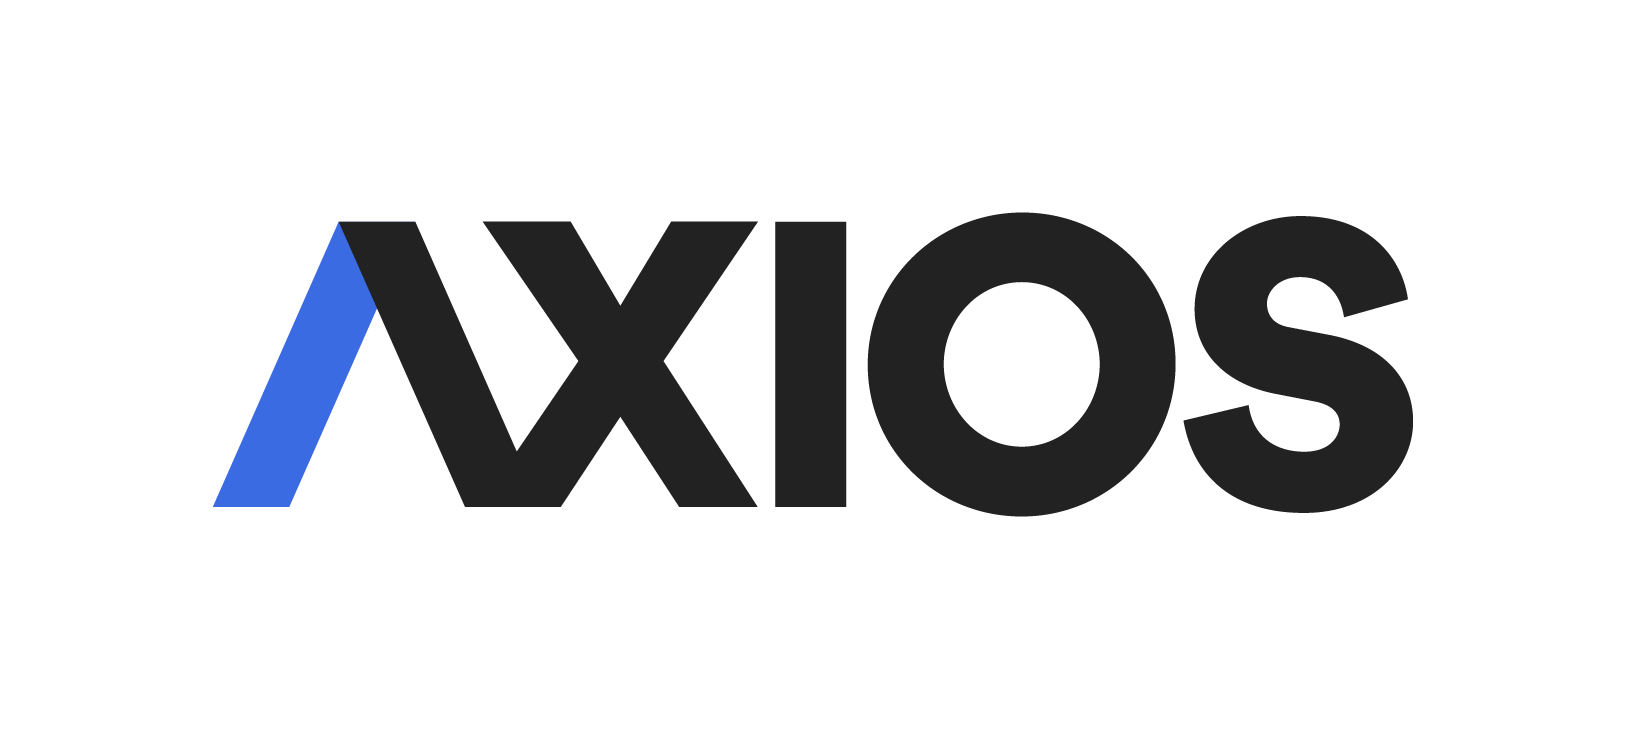 axios 로고